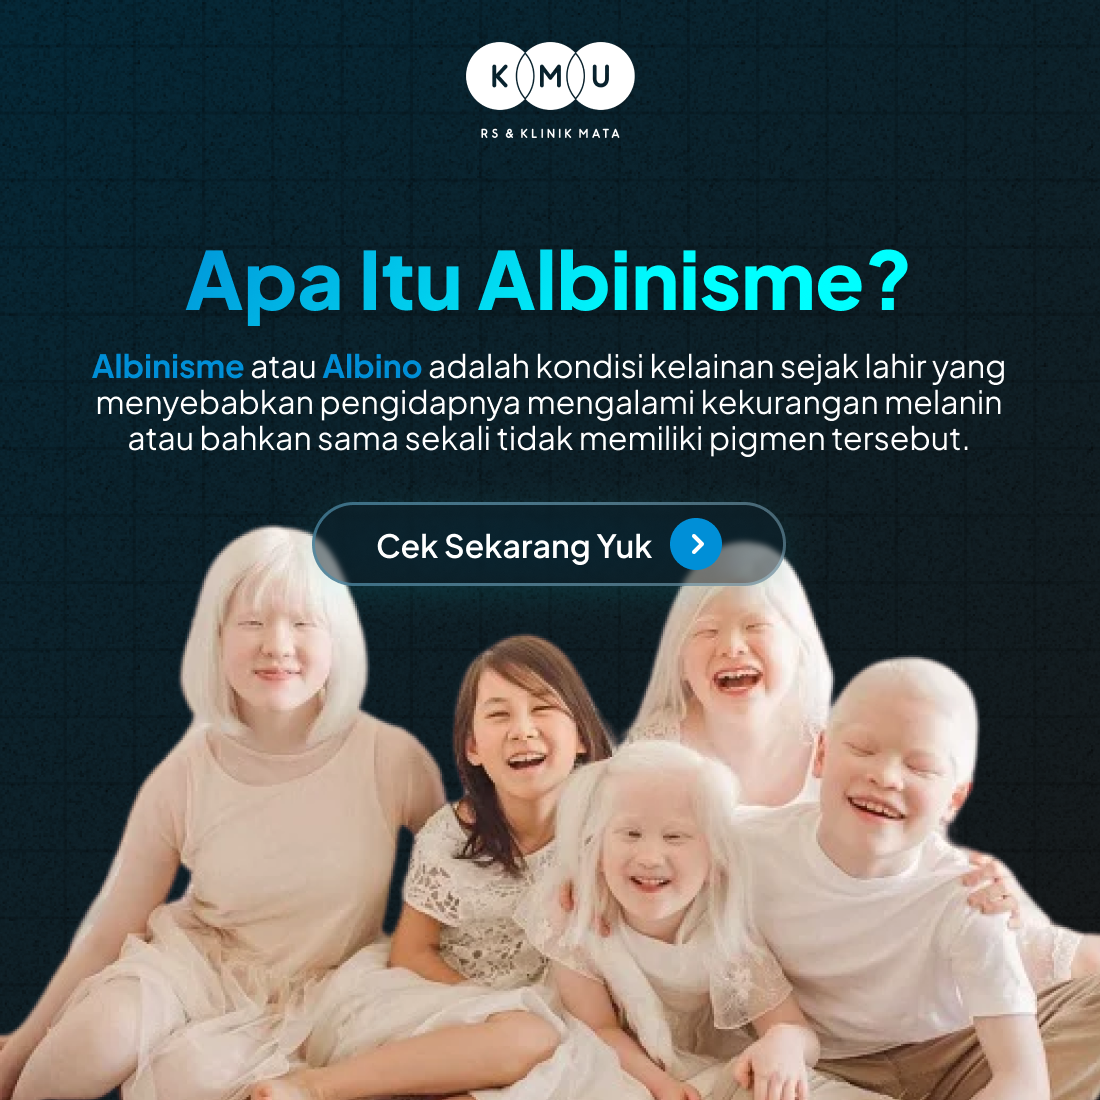 Apa Itu Albinisme - Gangguan mata pada albino